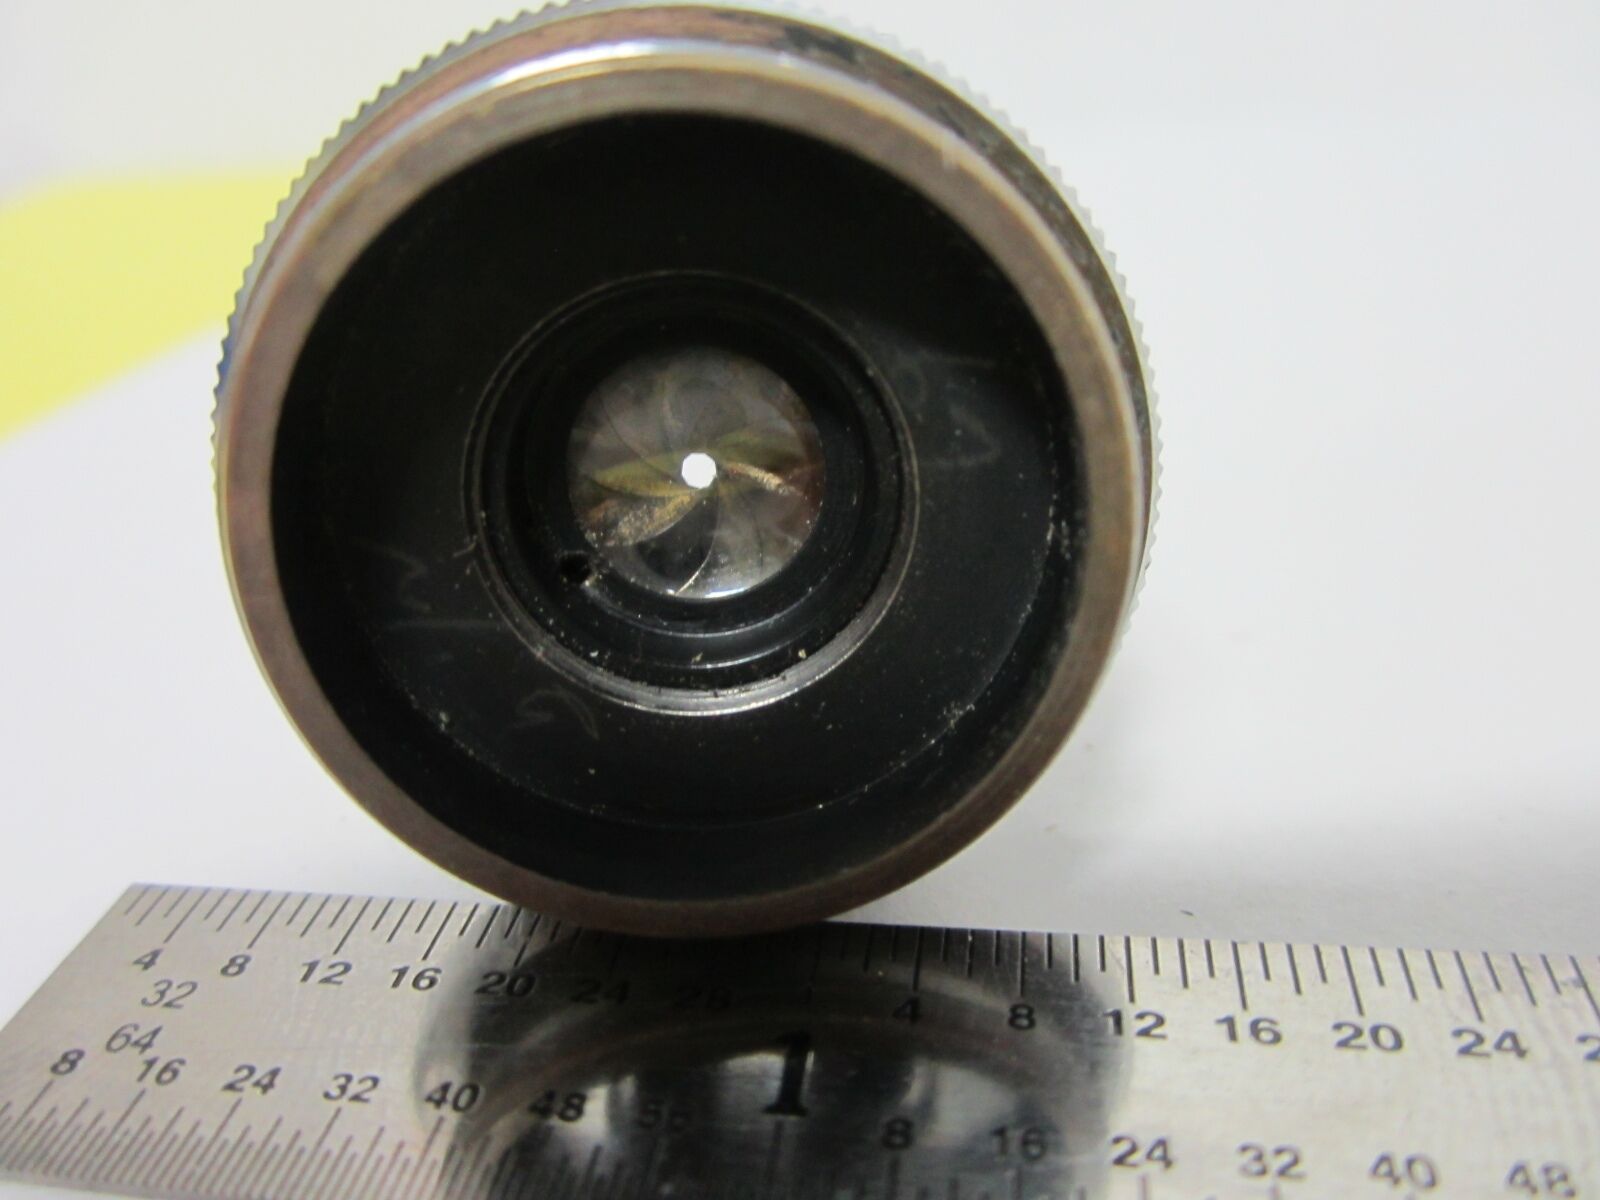 Obiektyw mikroskopu + Iris B&h USA Optics Bin #G5-H-22 Darmowa wysyłka, WYPRZEDAŻ!